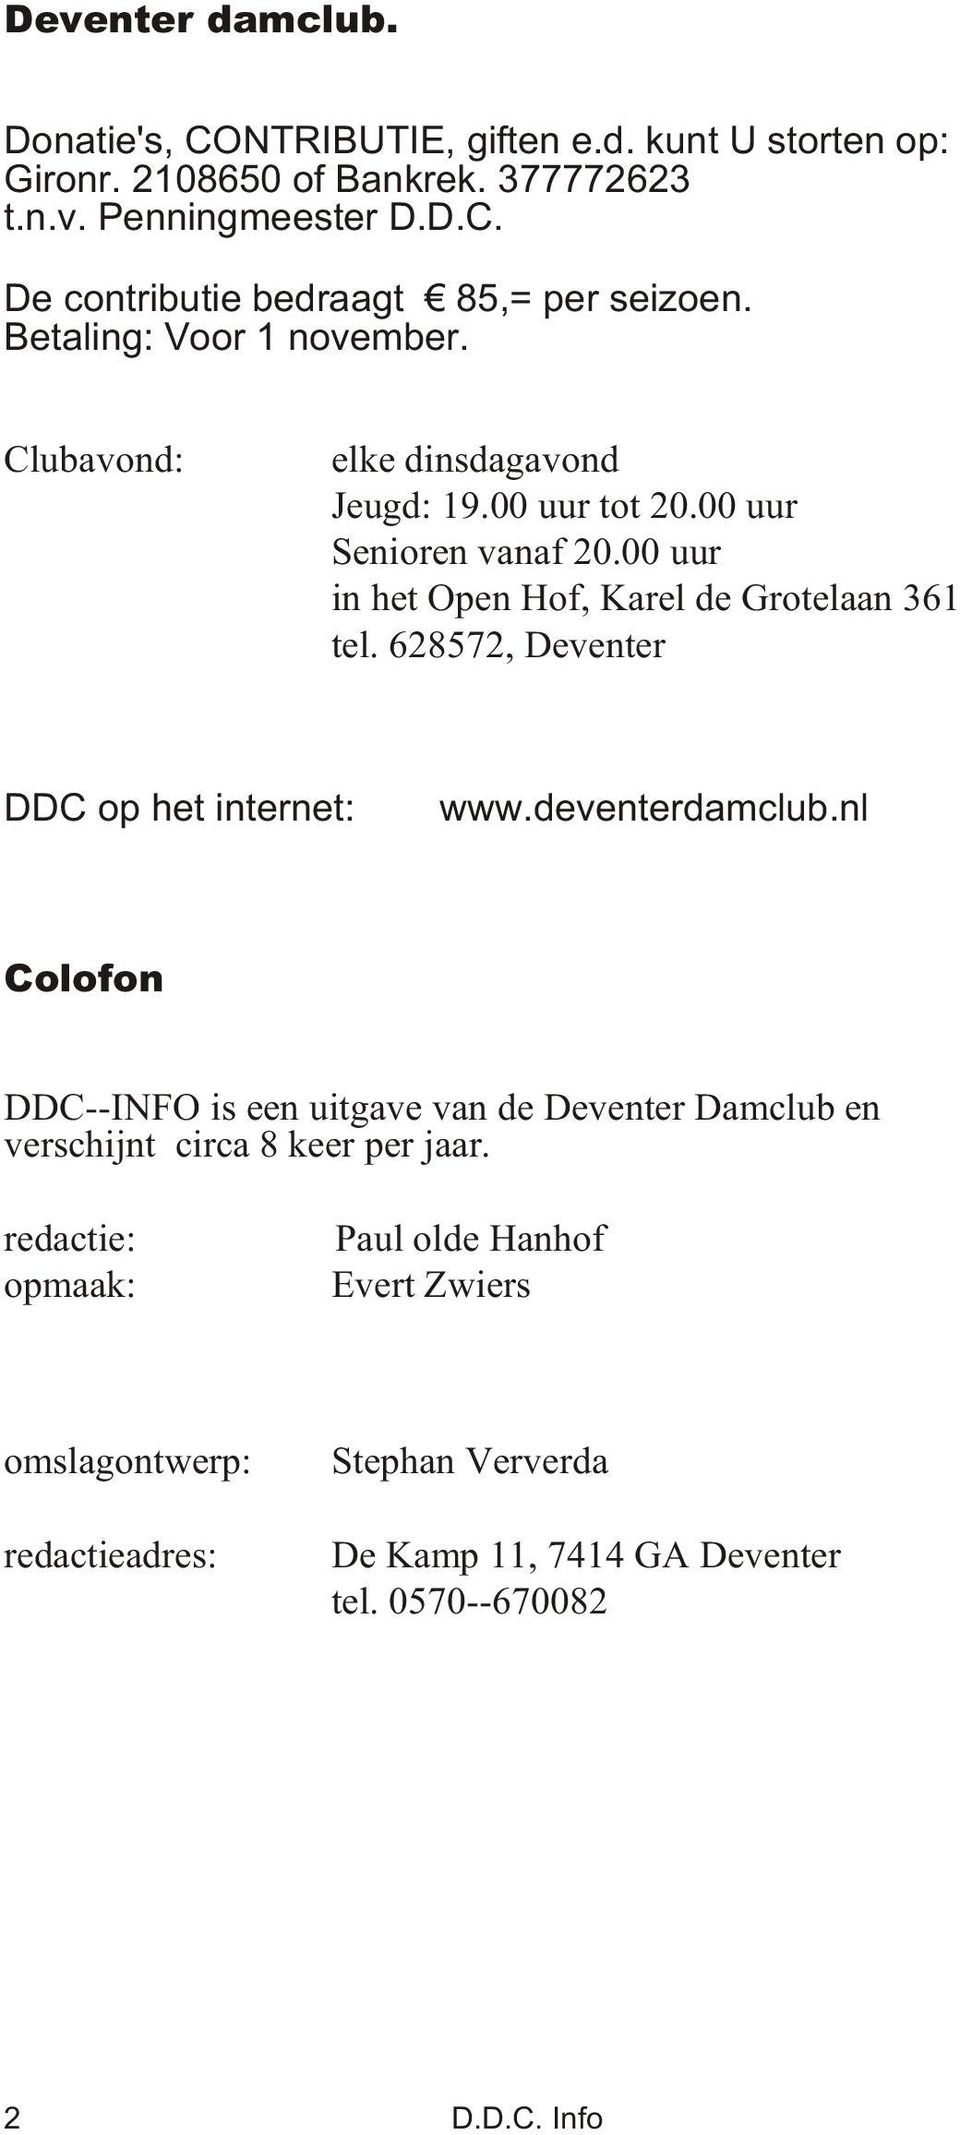 628572, De ven ter DDC op het in ter net: www.de ven ter dam club.nl Colofon DDC--INFO is een uit ga ve van de De ven ter Dam club en ver schijnt cir ca 8 keer per jaar.